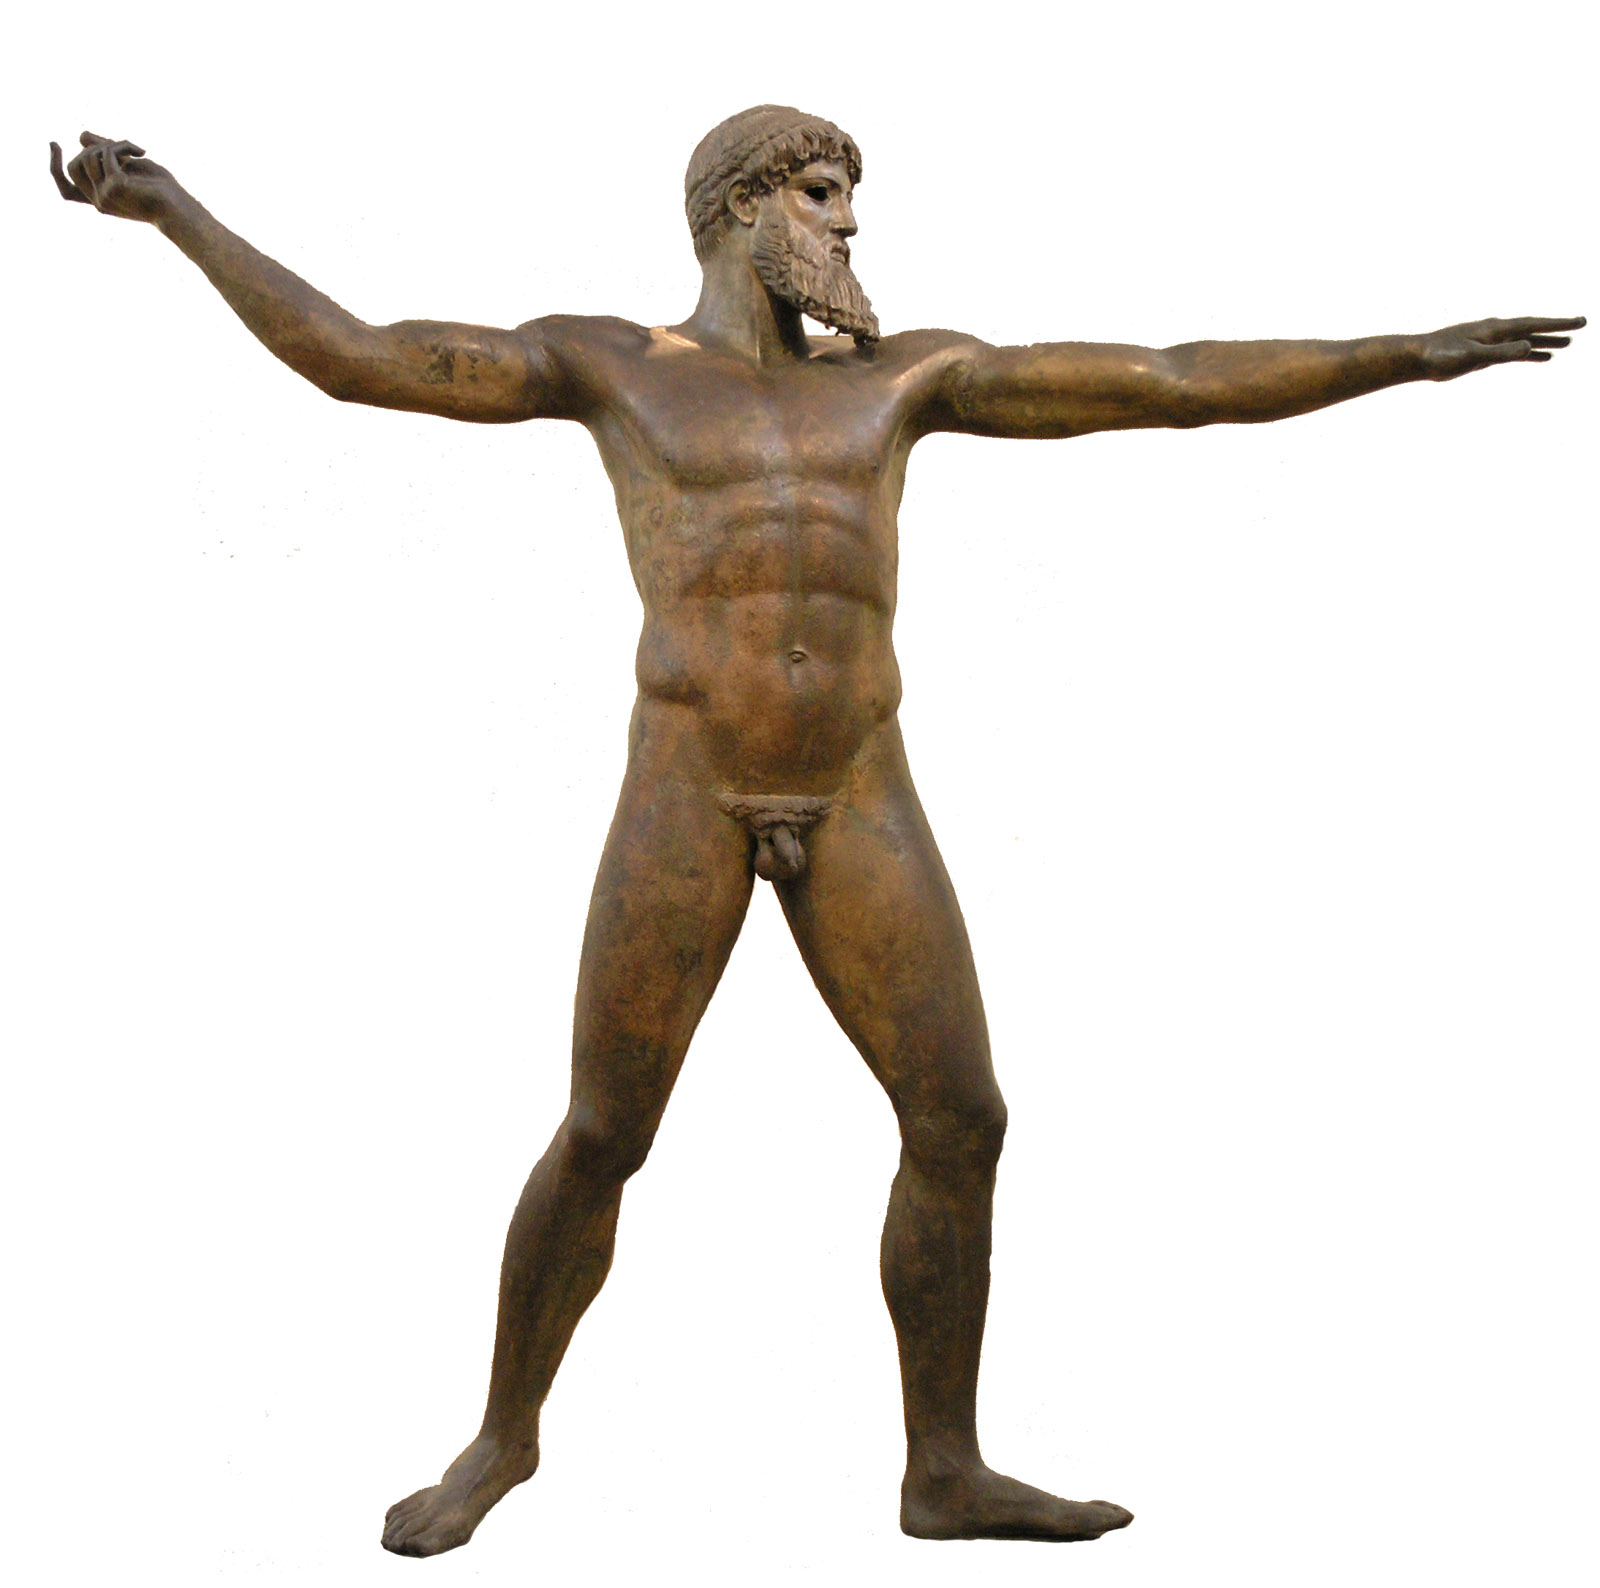 Статуя Зевса (или Посейдона?), найденная у мыса Артемисион. Бронза. Высота 2,09 метра. Ширина 2.10 метра. 460-450 гг. до н. э. Афины, Национальный археологический музей.